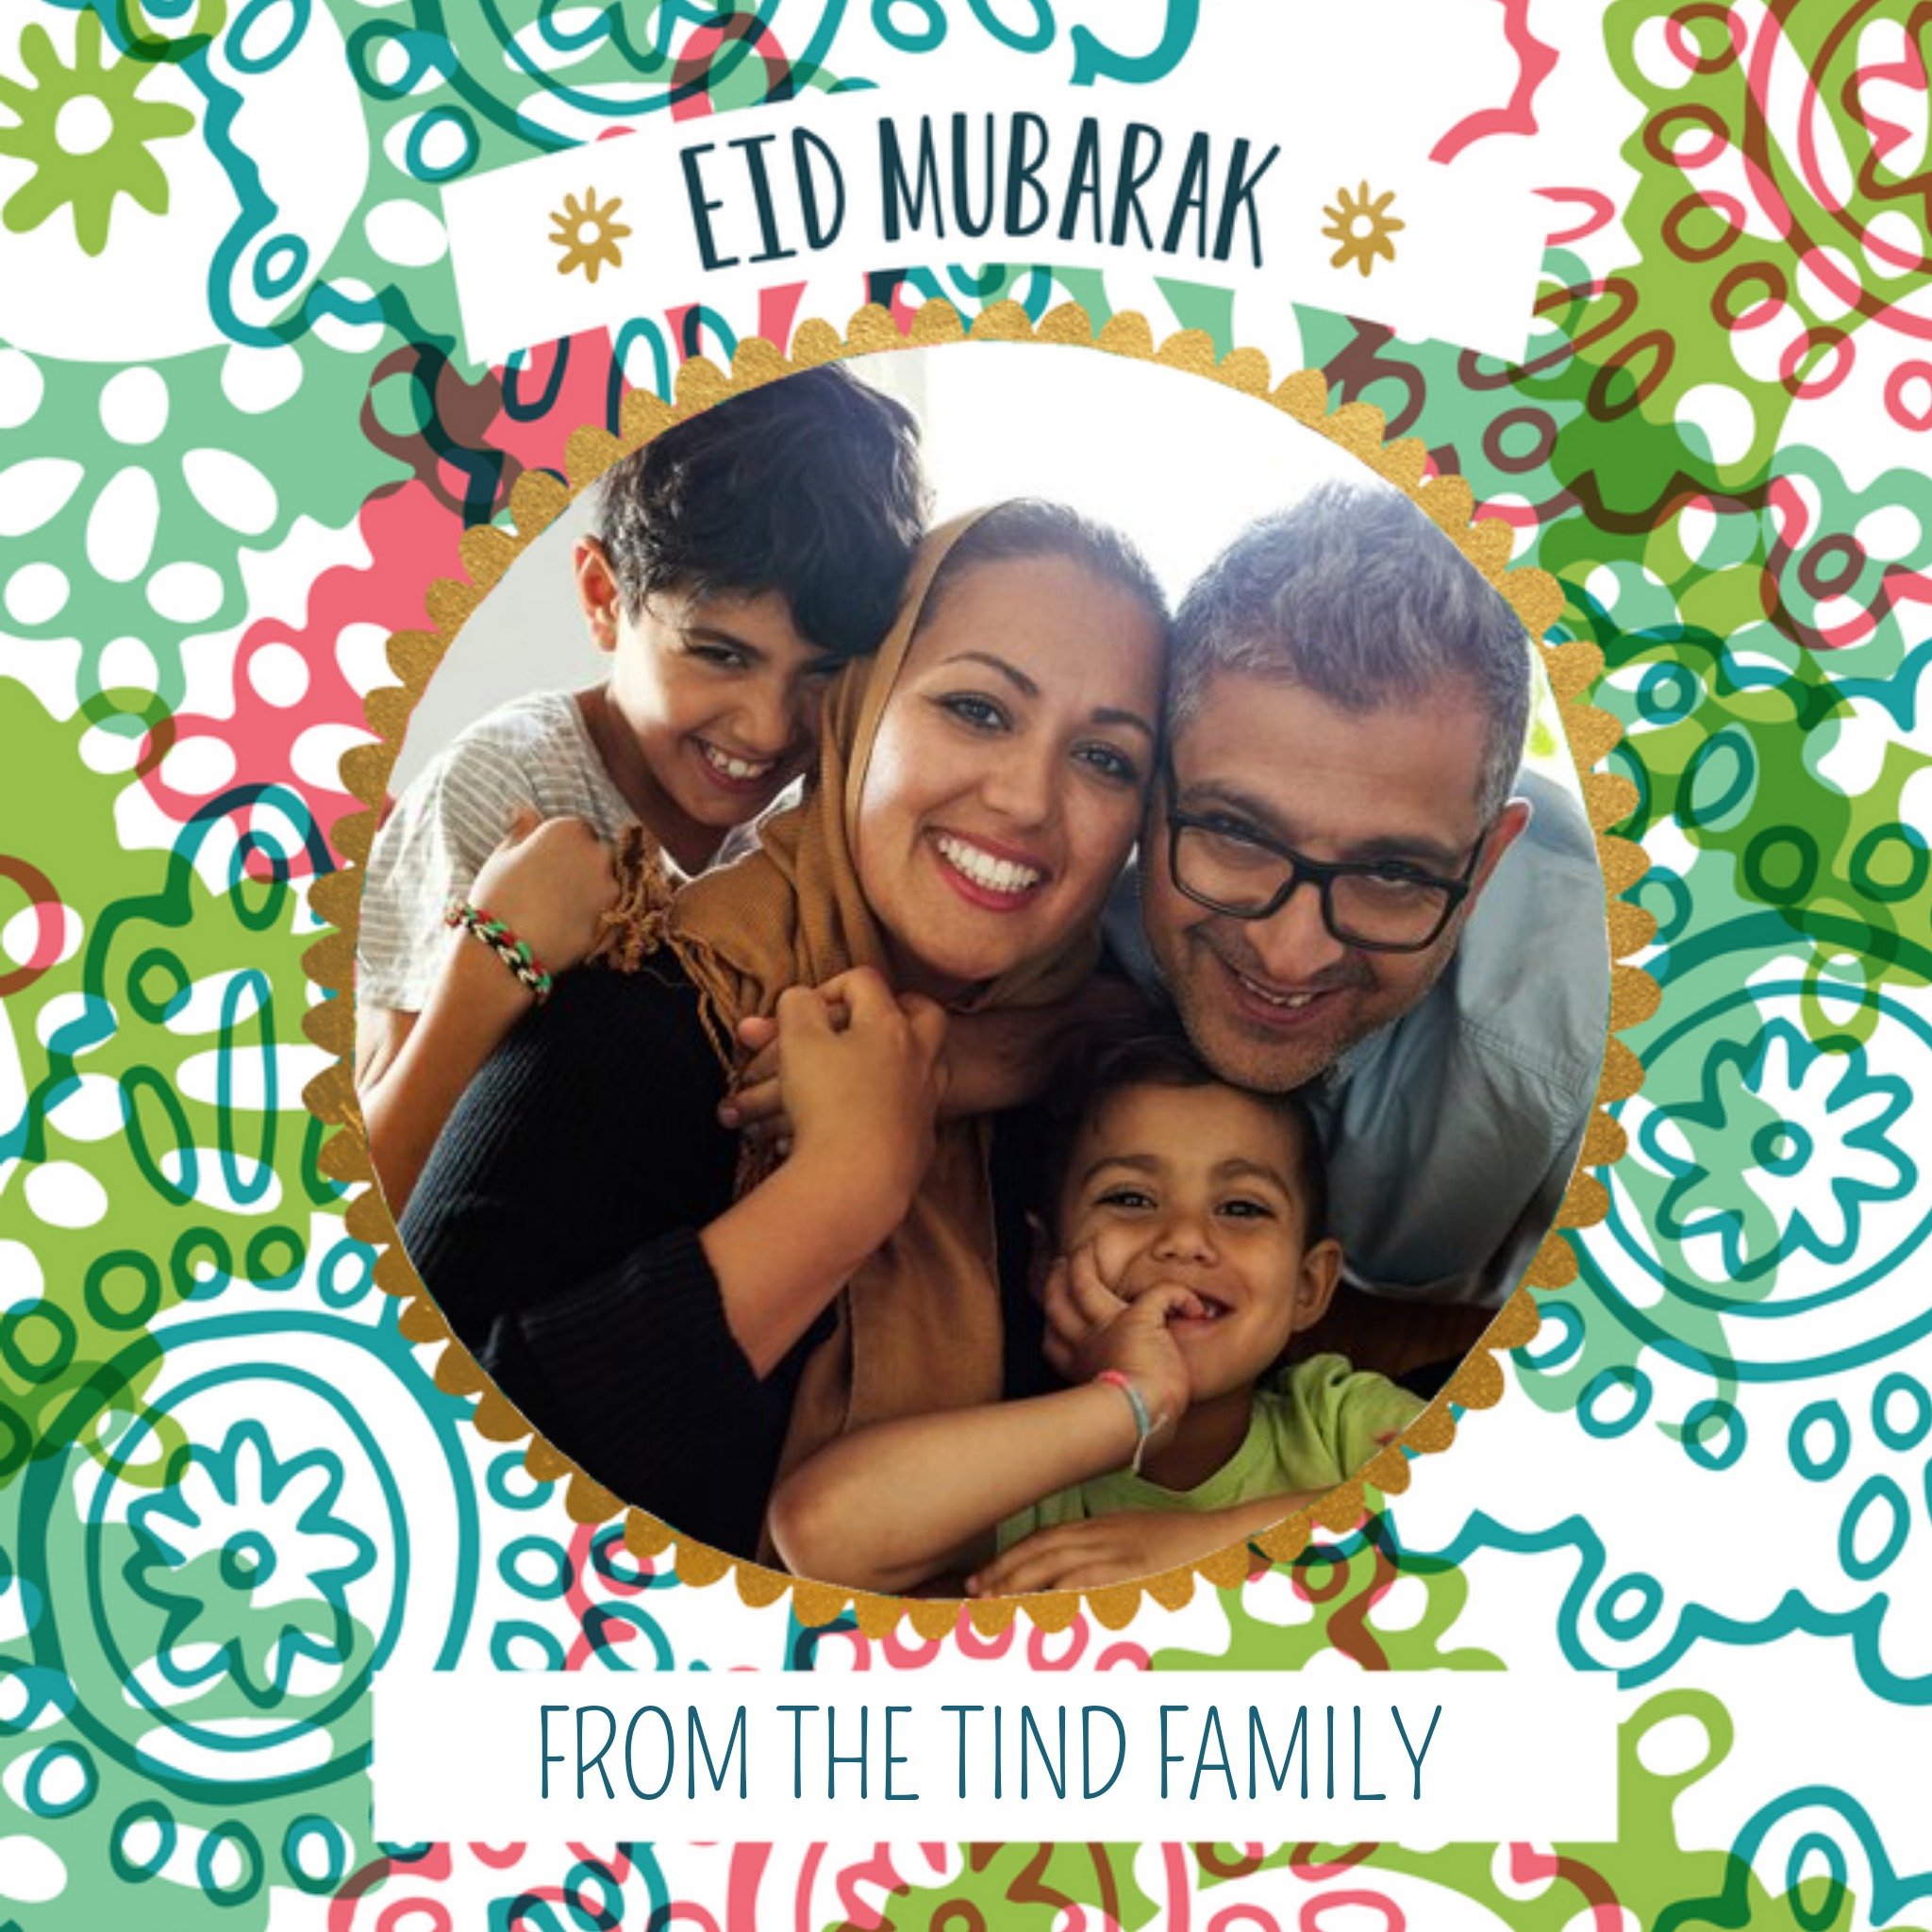 Moonpig Colourful Patterned Eid Mubarak Photo Card, Large